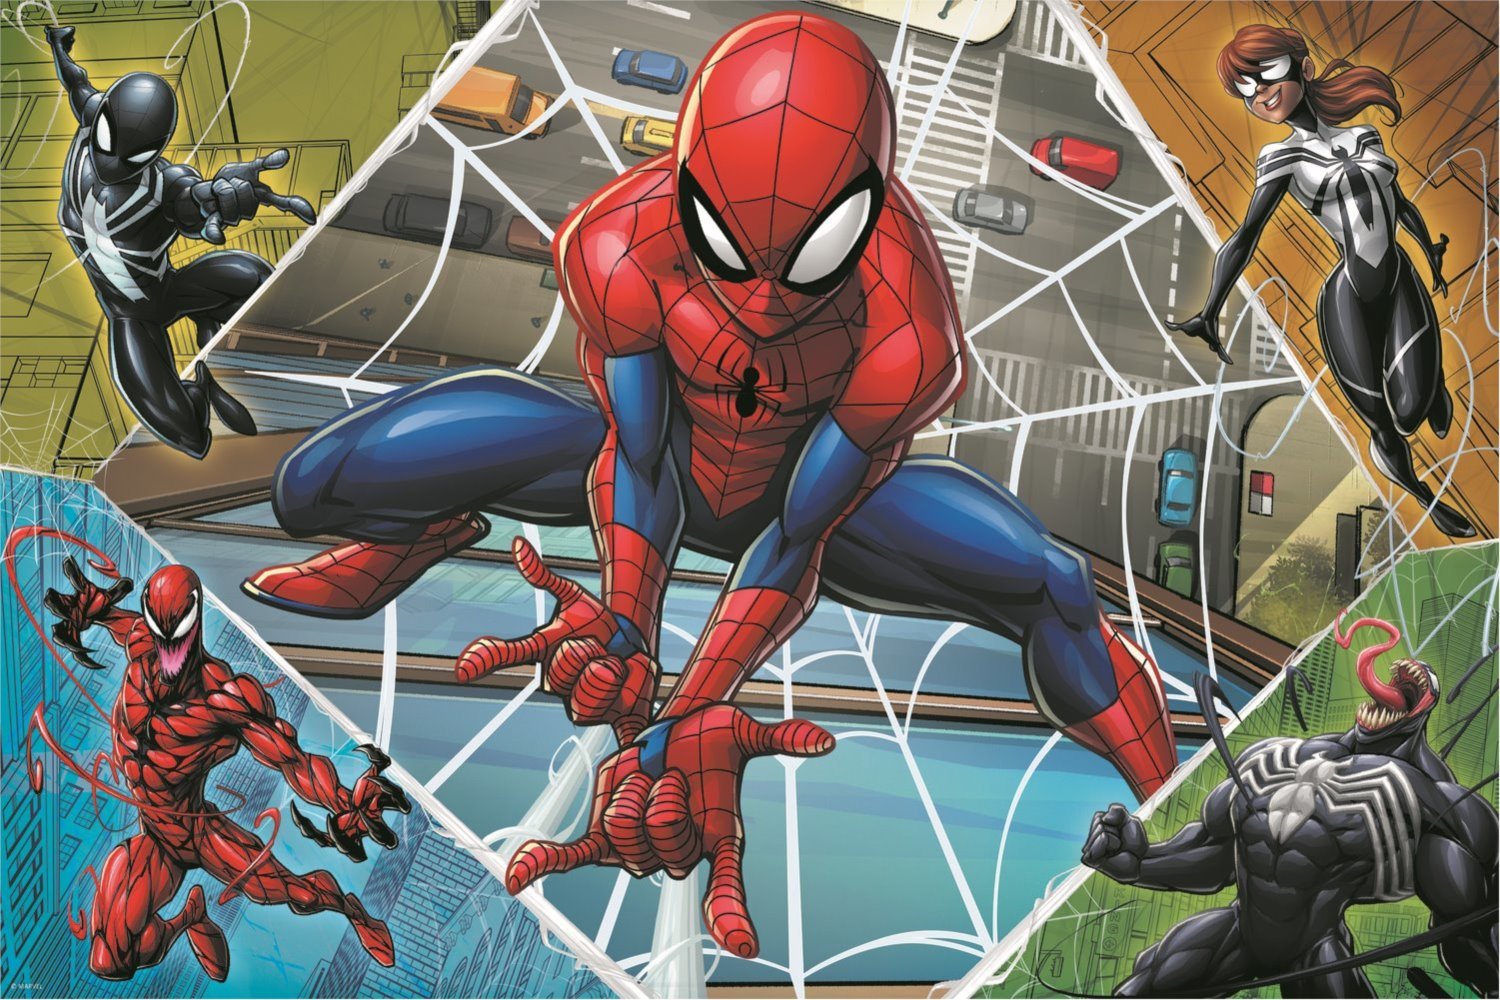 TREFL Puzzle Skvělý Spiderman 300 dílků